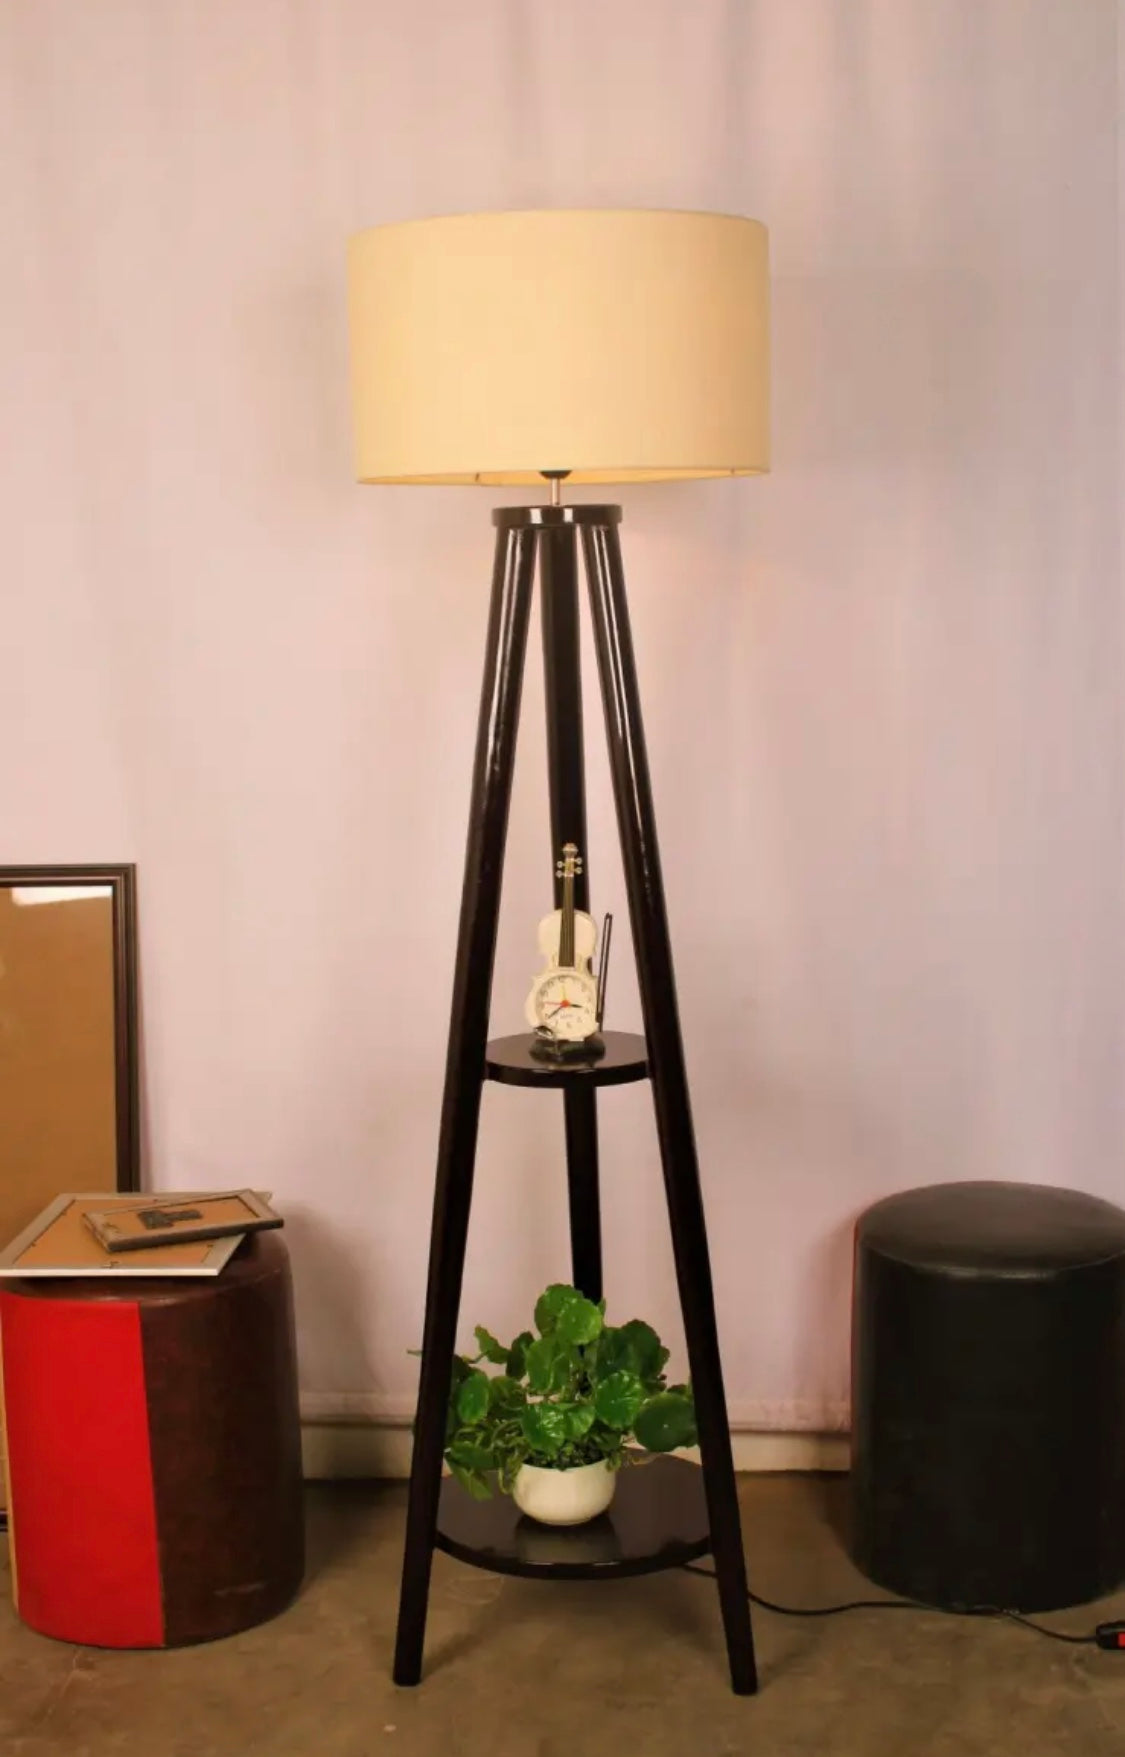 SKU : 101c - Tripod double Rack wooden floor lamp